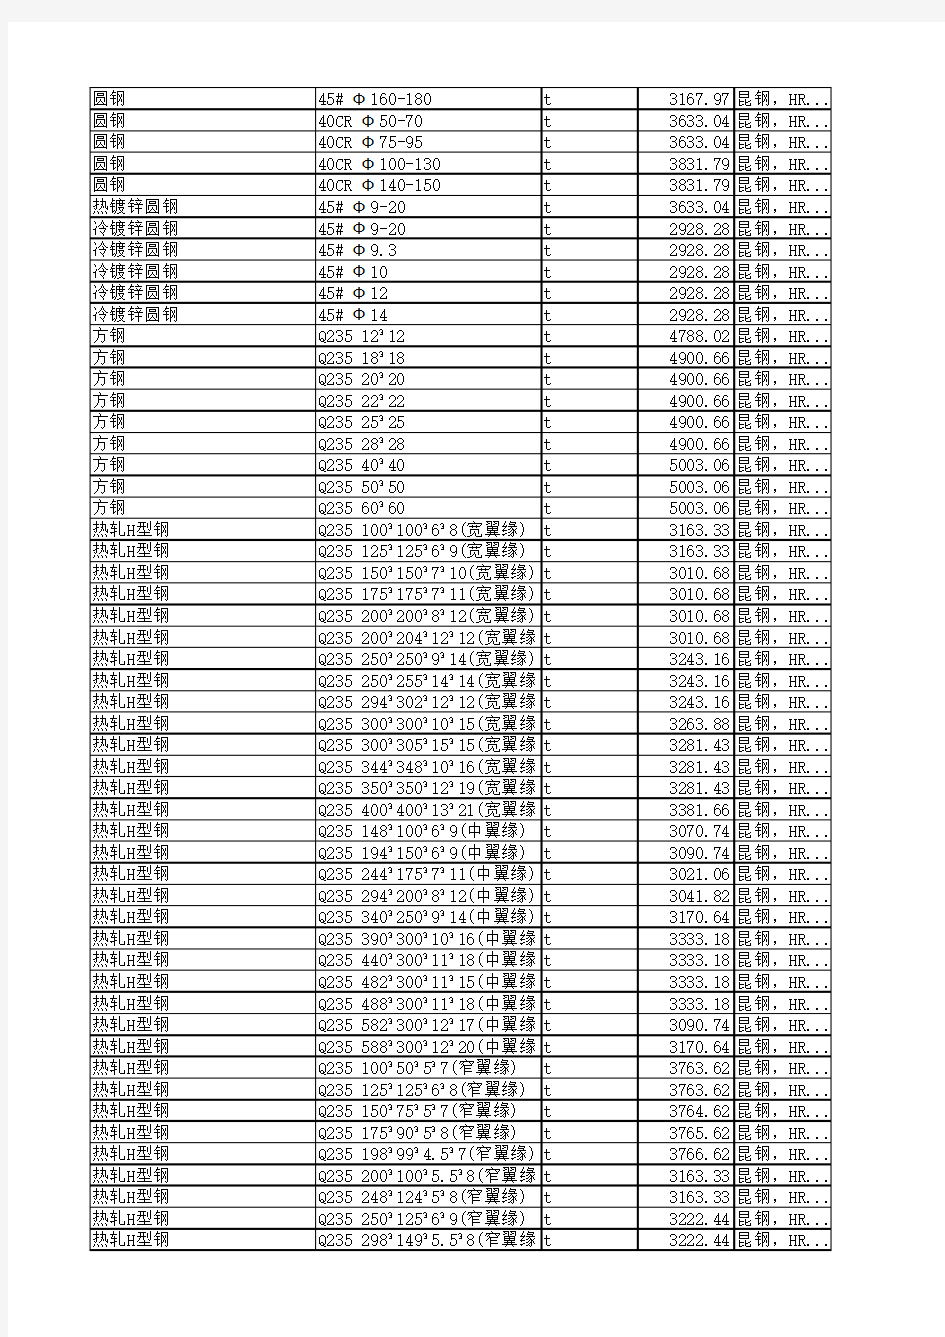 昭通市材料信息价2015年9月